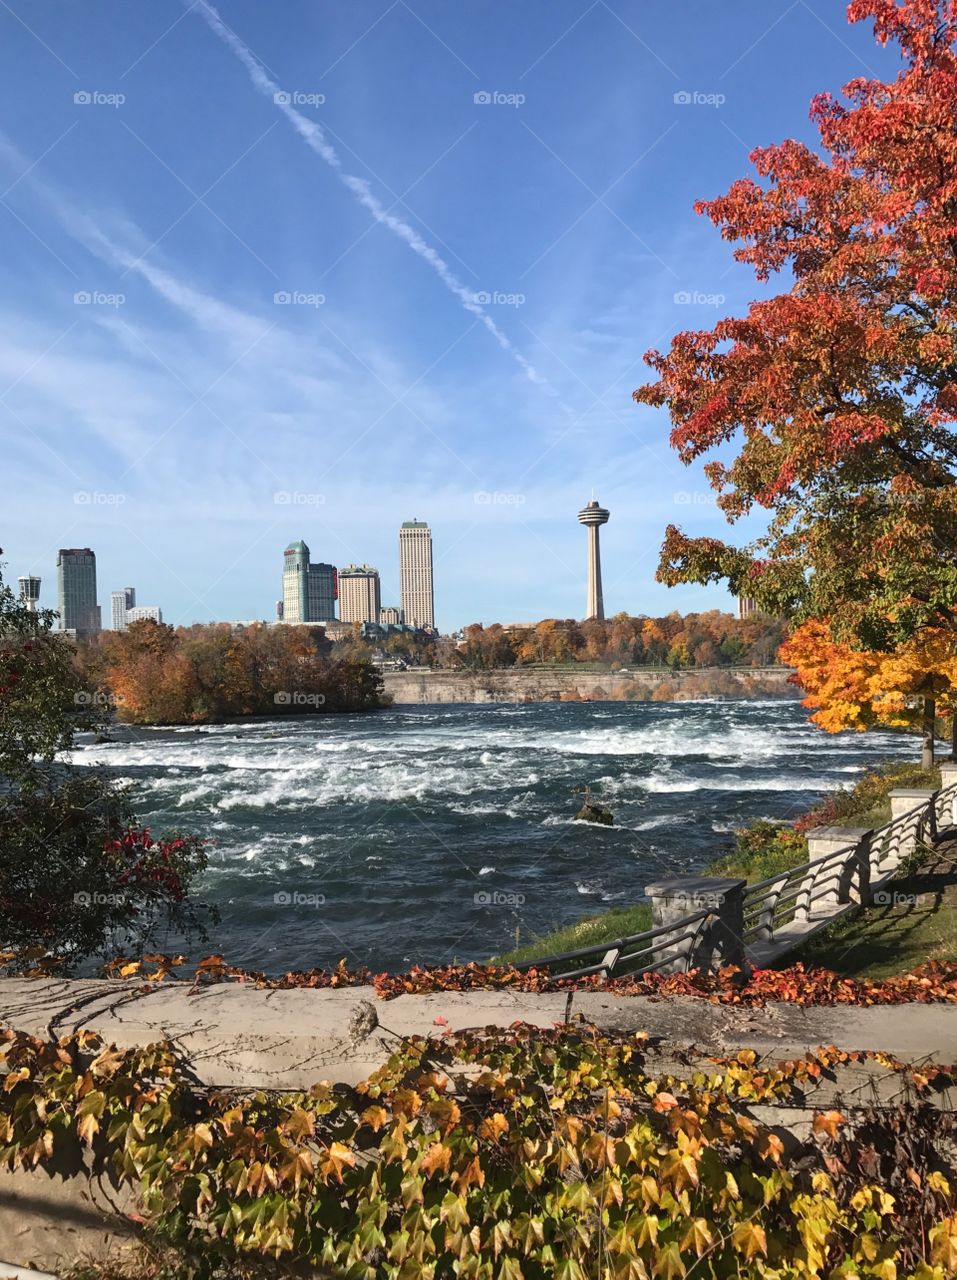 Fall in Niagara Falls